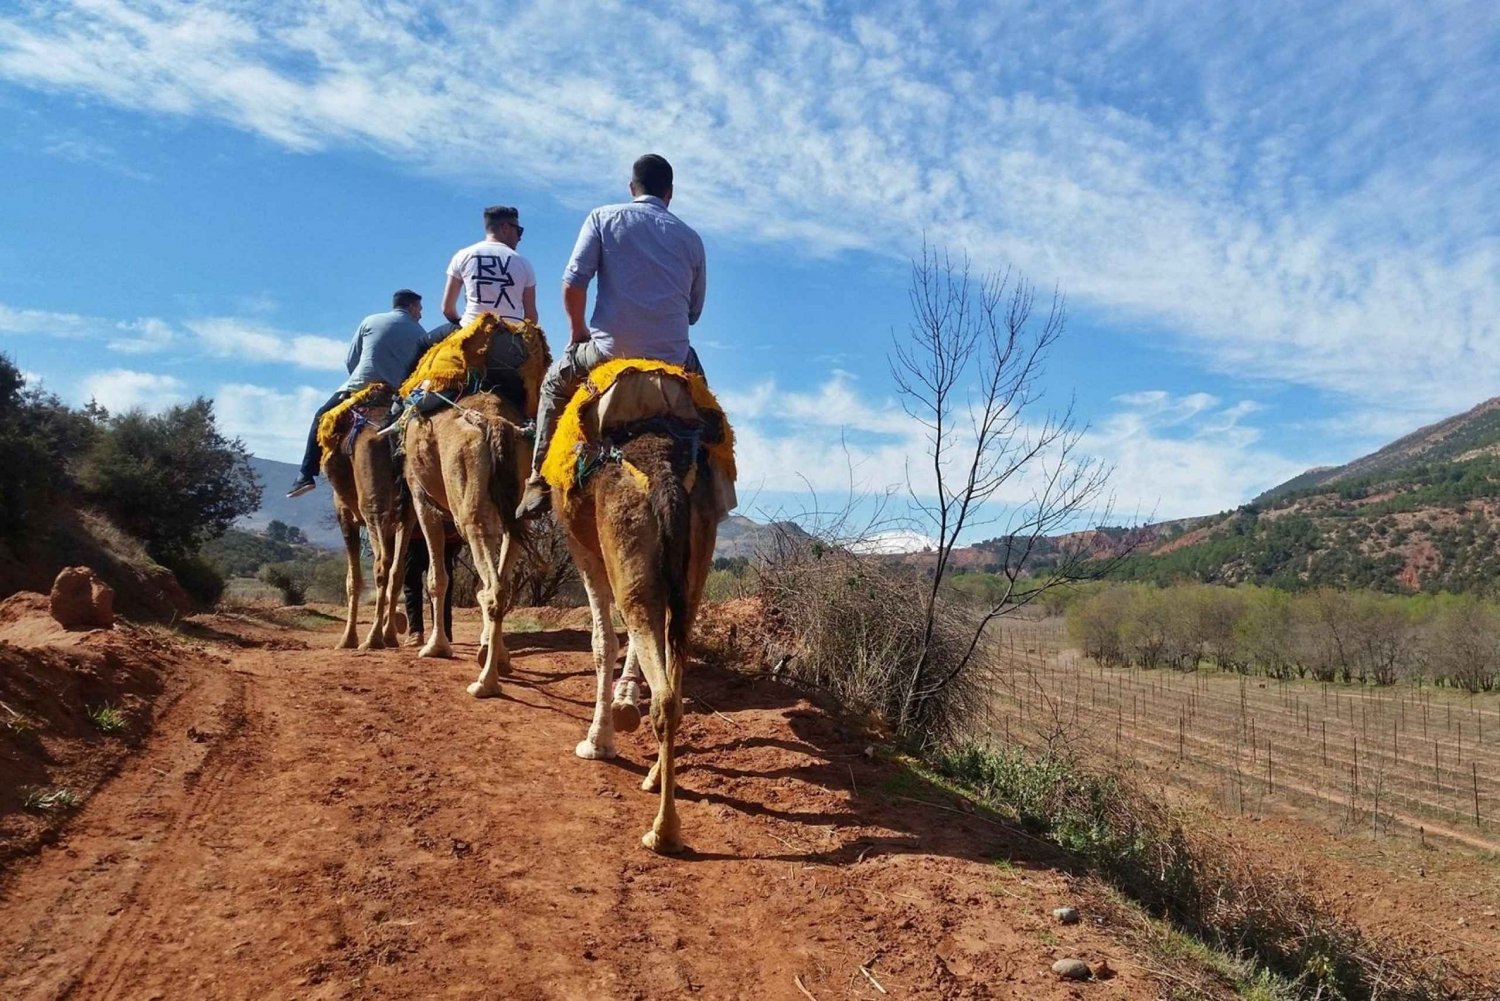 De Marrakech: passeio a cavalo de 45 minutos pelas montanhas do Atlas